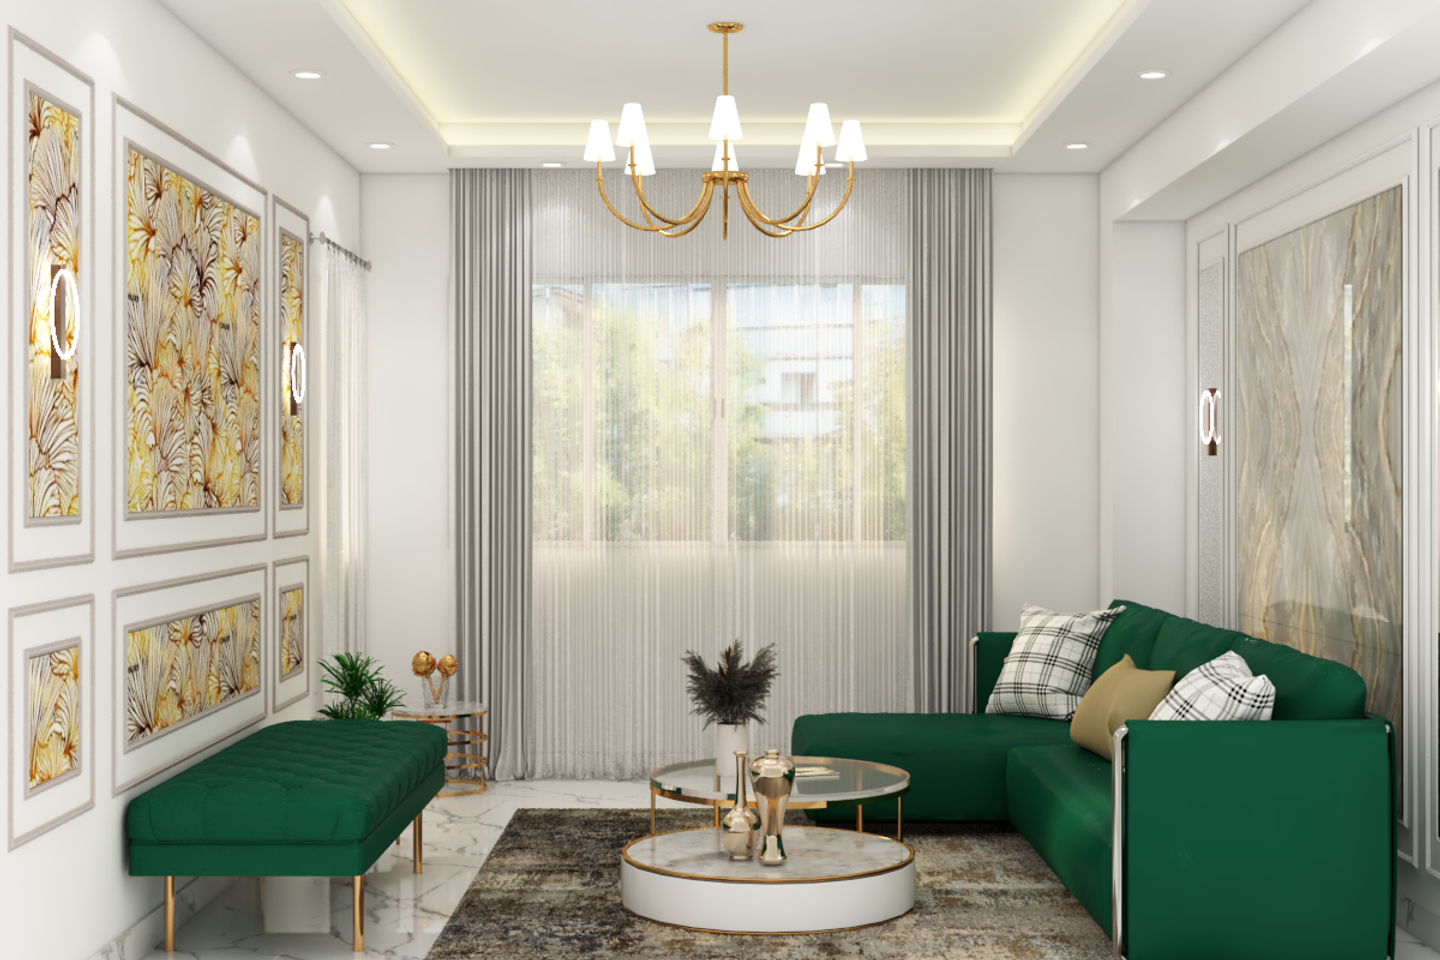 Contemporary Living Room Design Idea - Livspace